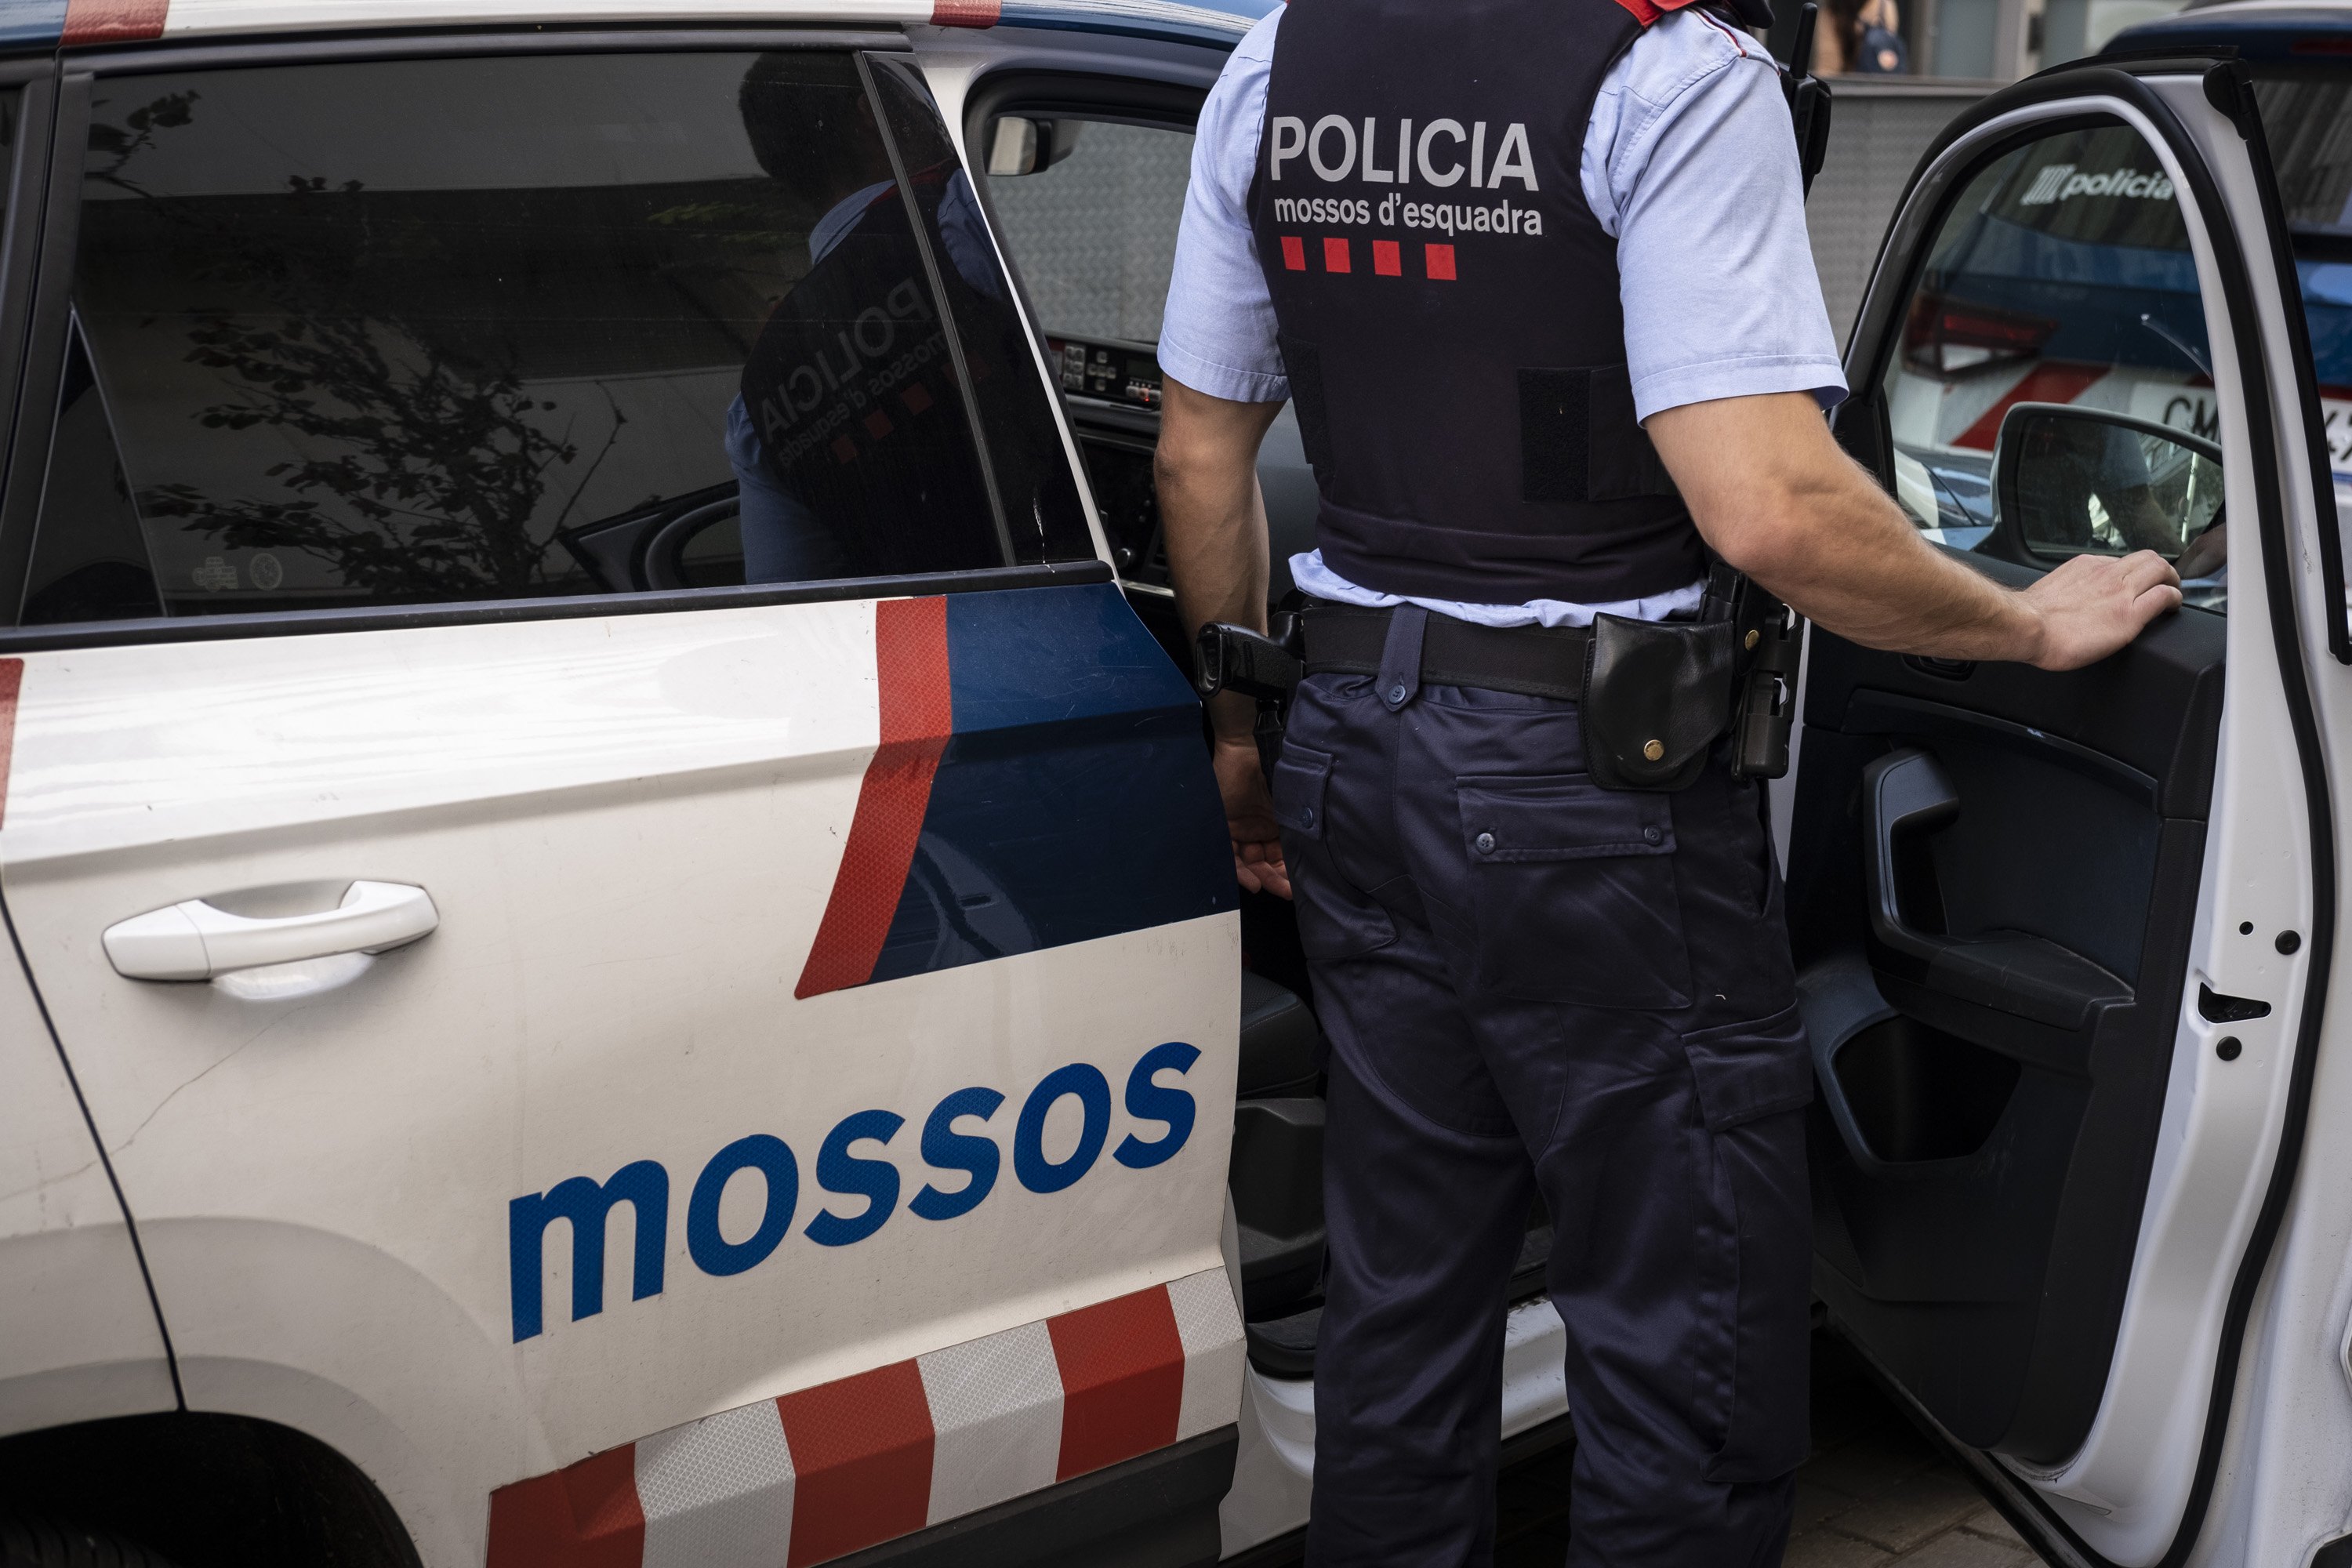 Recurs mossos d'esquadra agent entrant al cotxe dreta / Foto: Carlos Baglietto